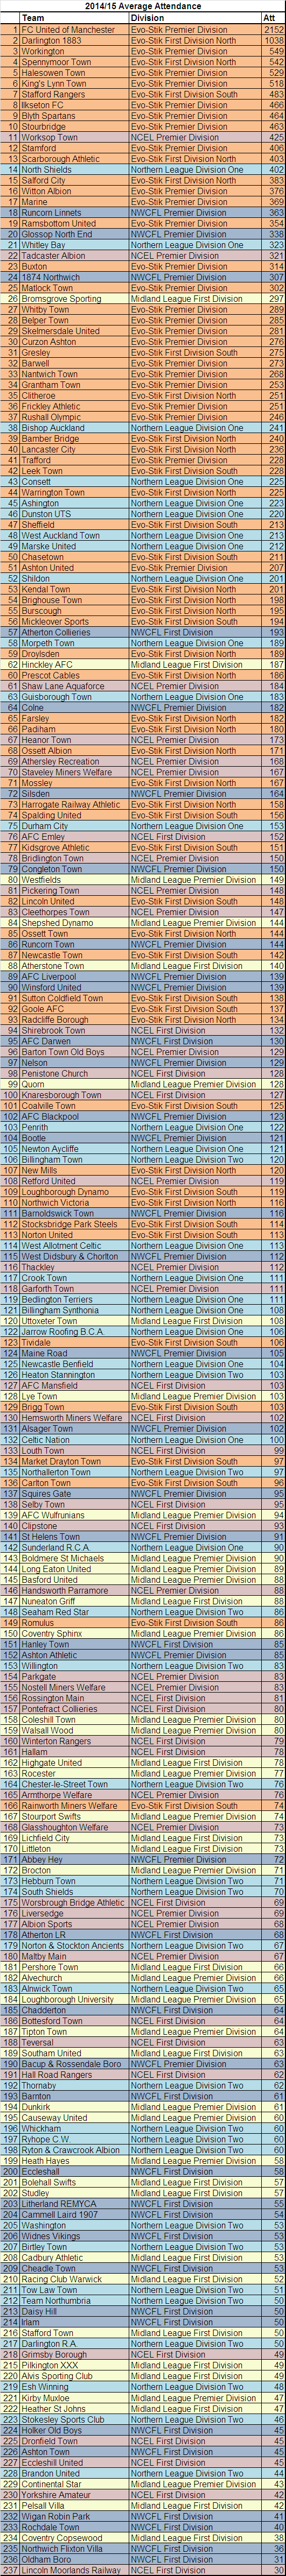 Attendance League Table